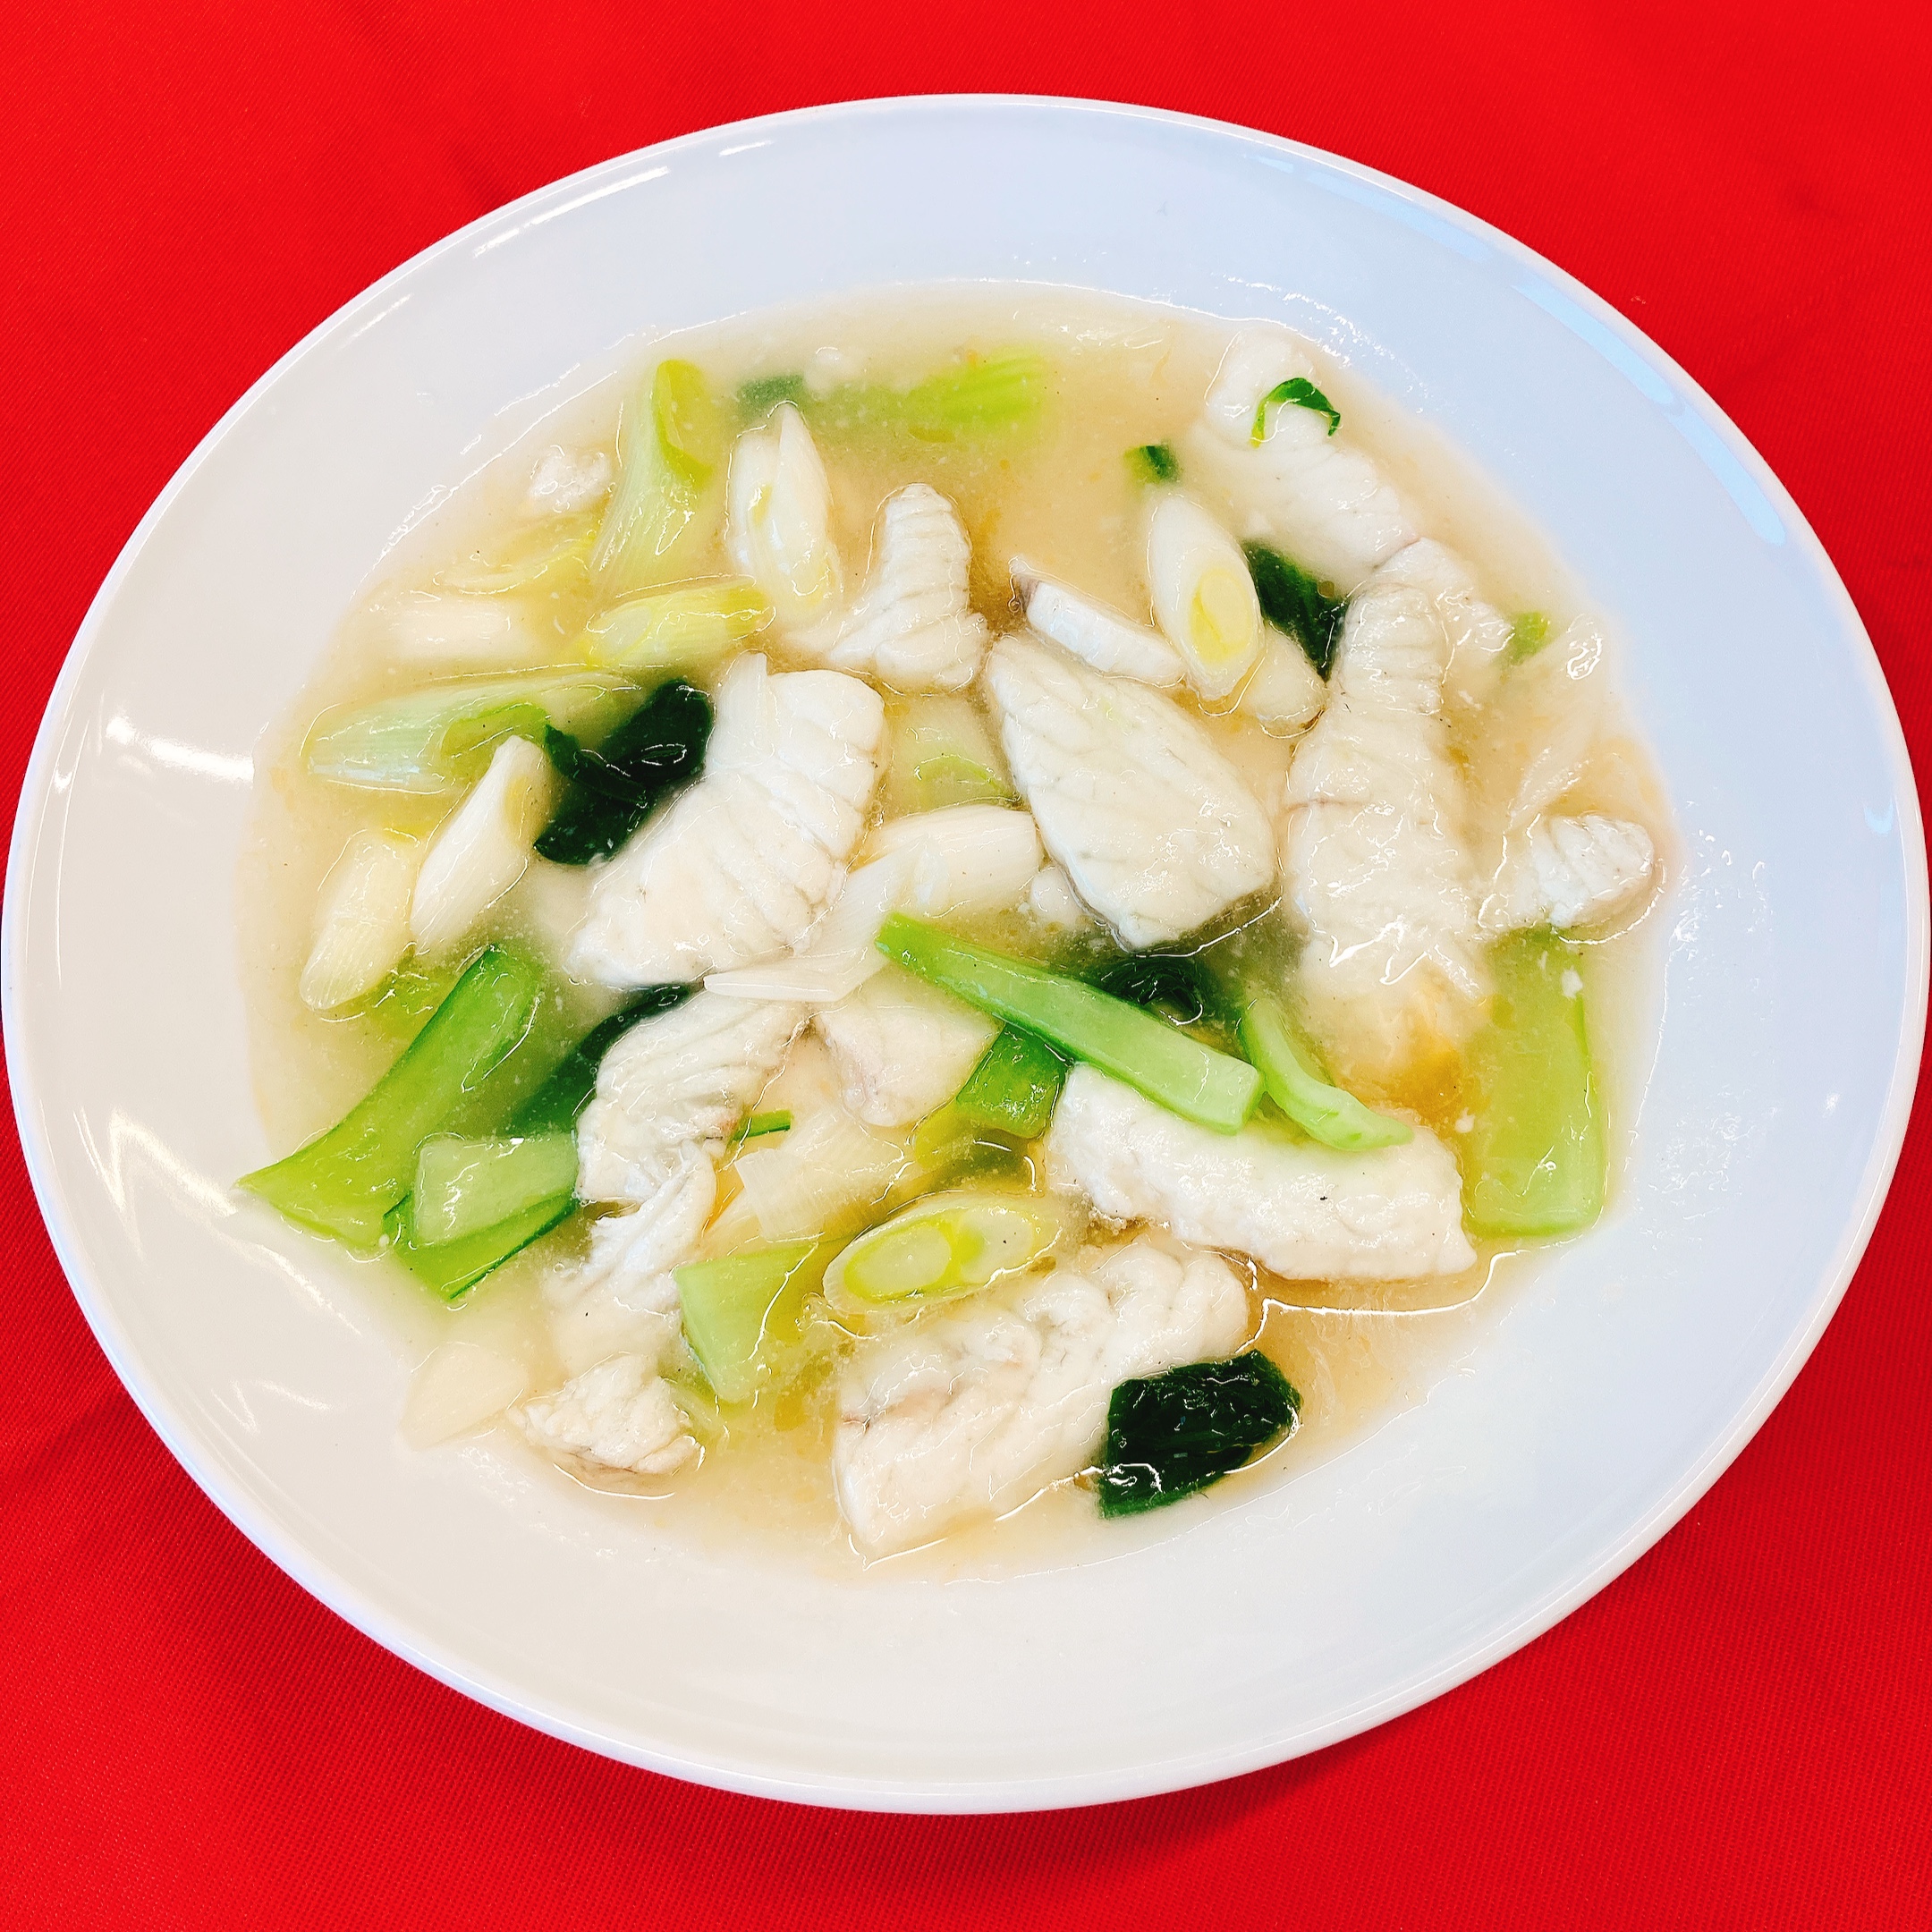 スズキの中華塩煮込み 海の恵み 食の底力 Japan 公式レシピサイト